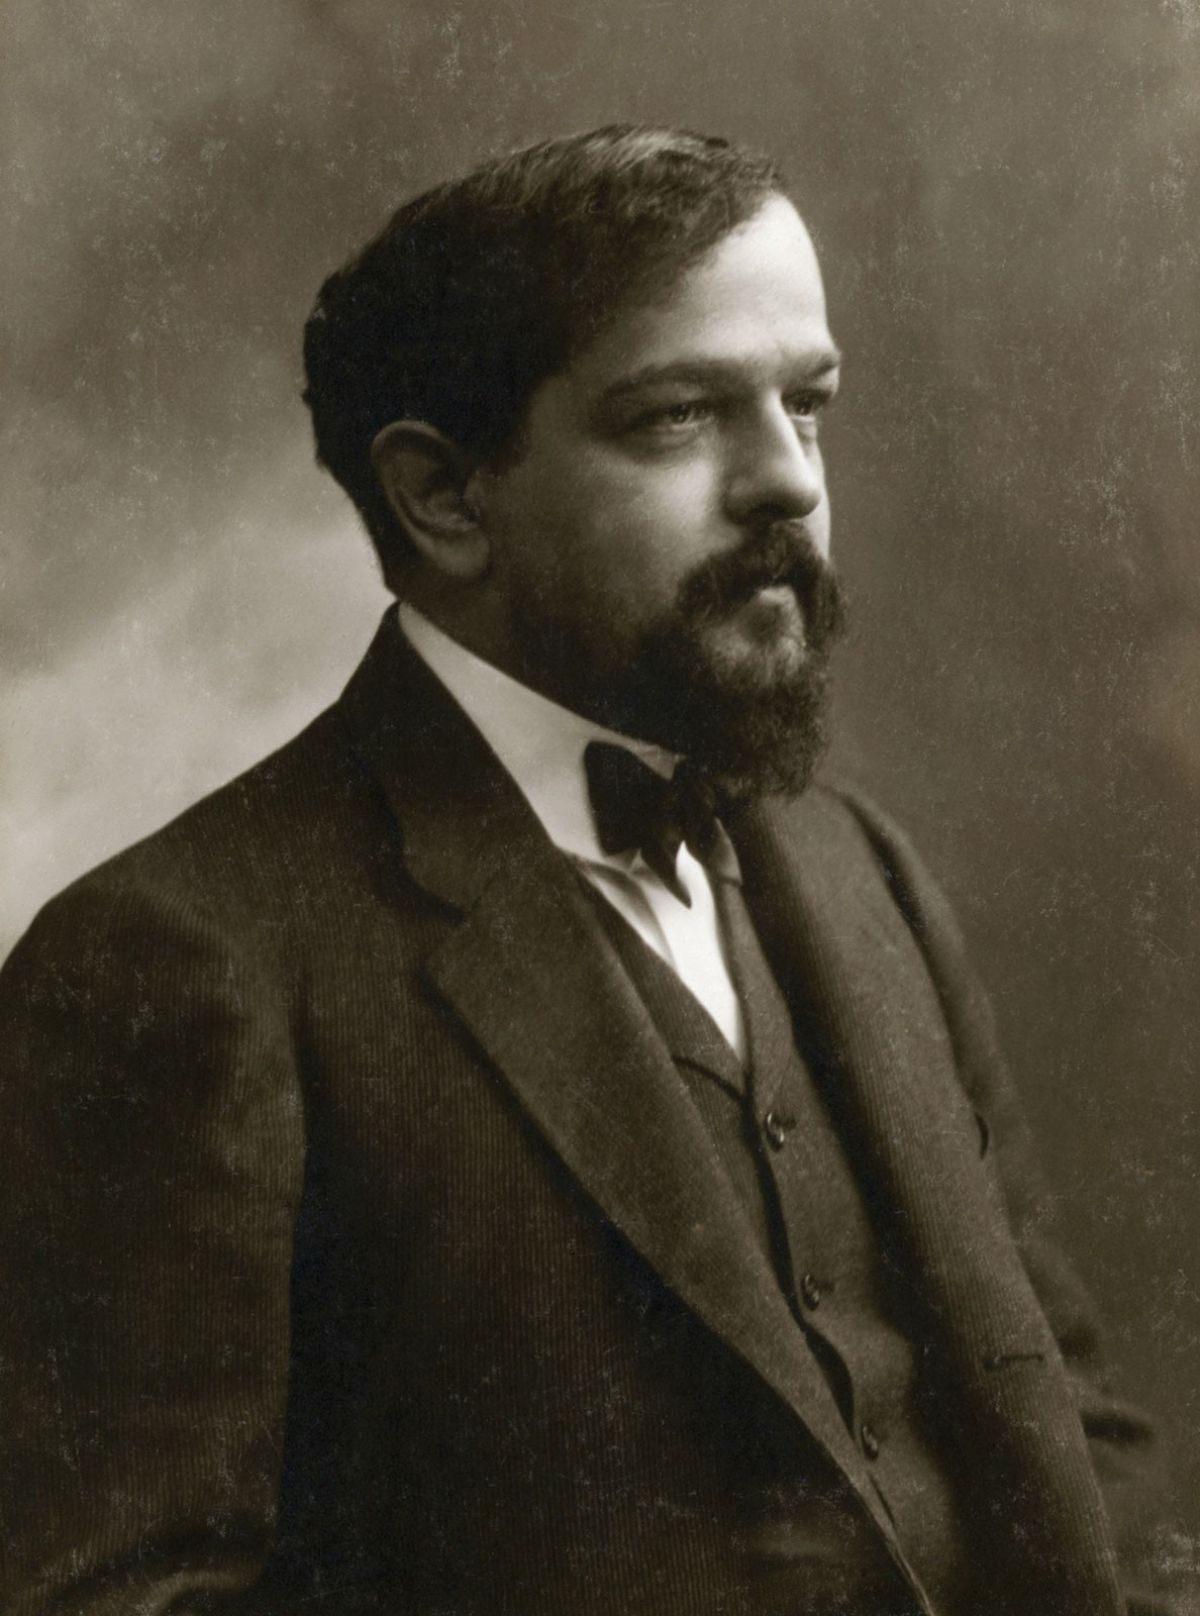 Claude_Debussy_1862-1918.jpg